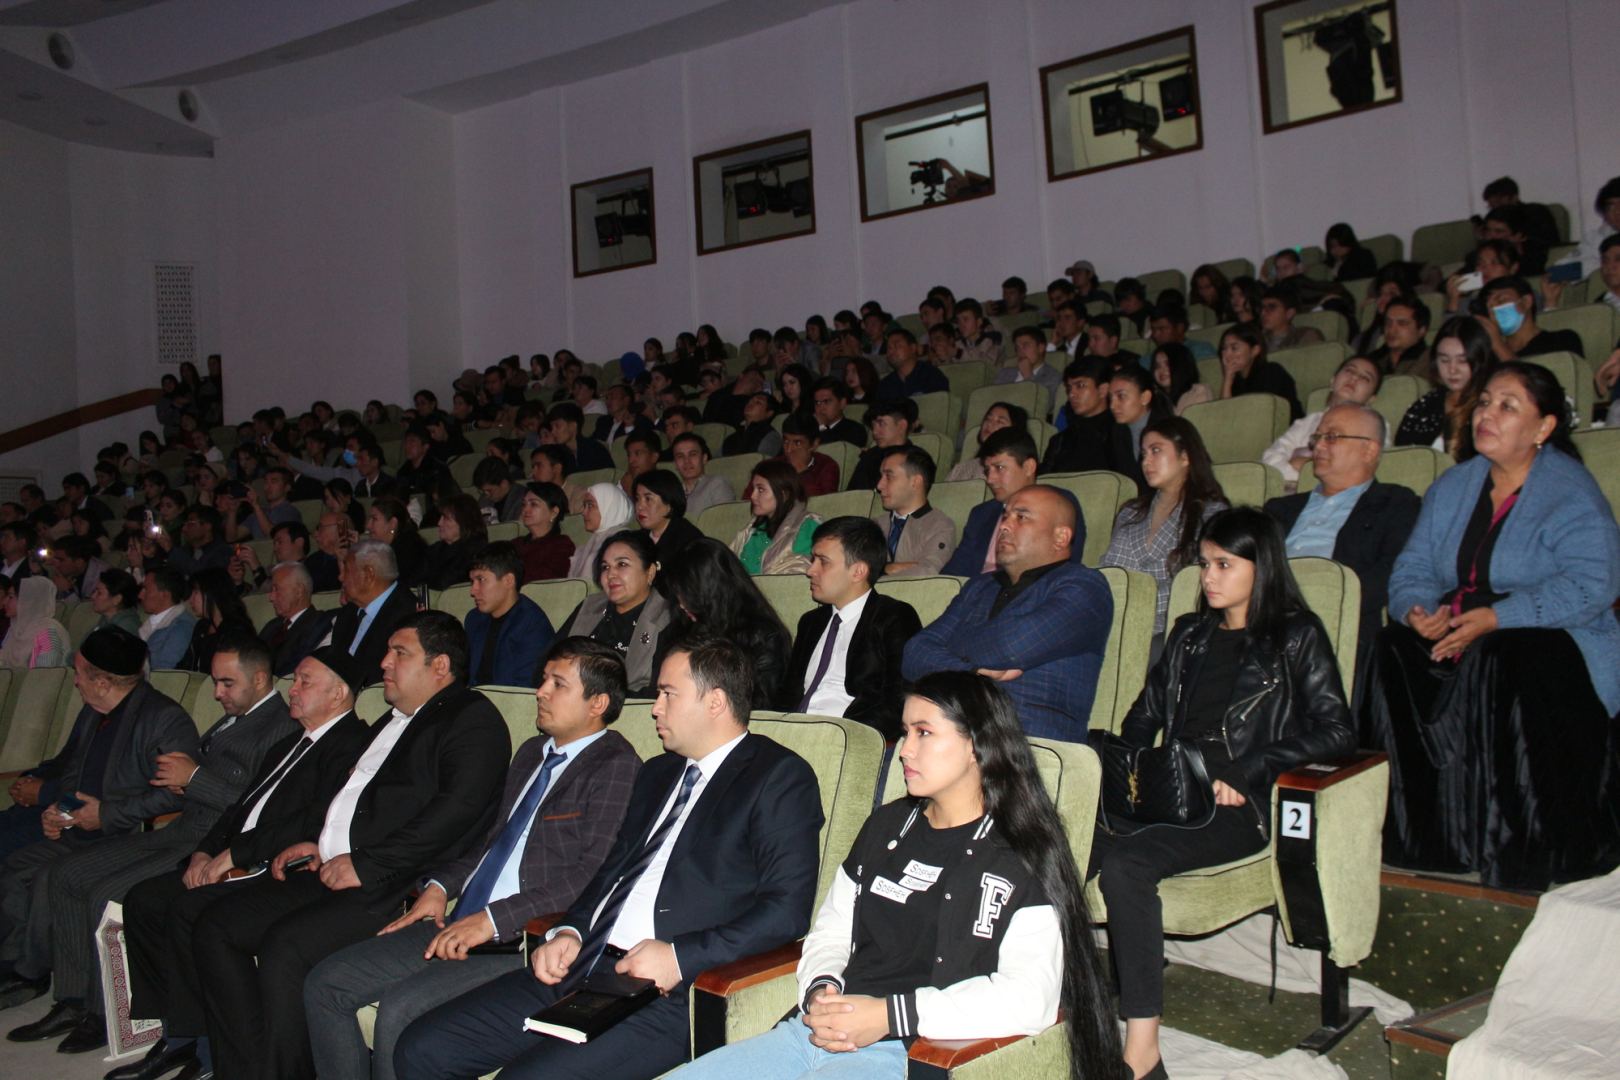 В Узбекистане началась Неделя азербайджанской культуры и поэзии (ФОТО)